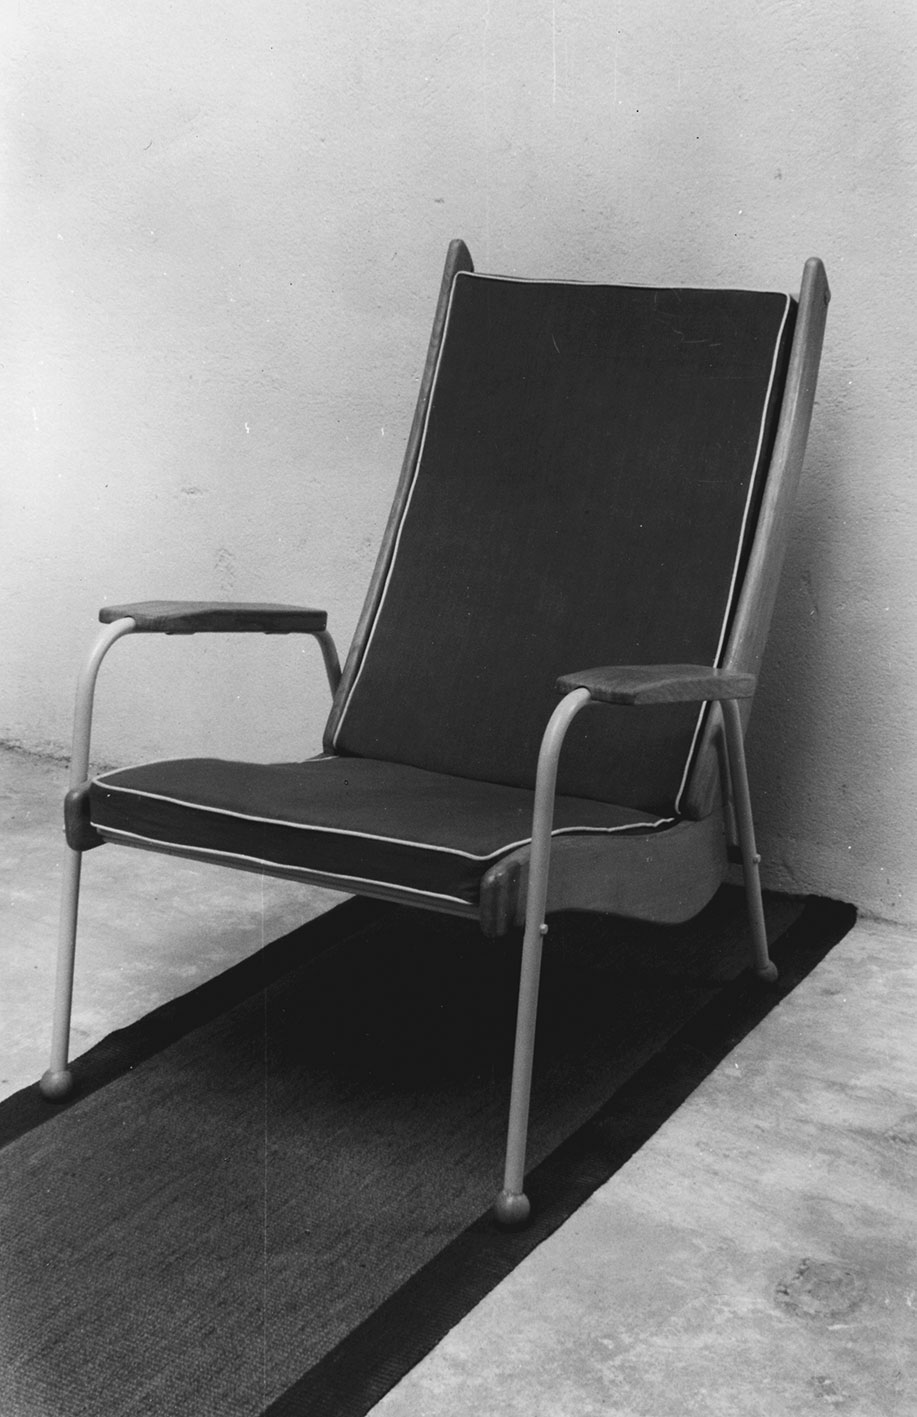 Visiteur Métropole FV 12 armchair, 1948. Prototype in the workshop, ca. 1948.